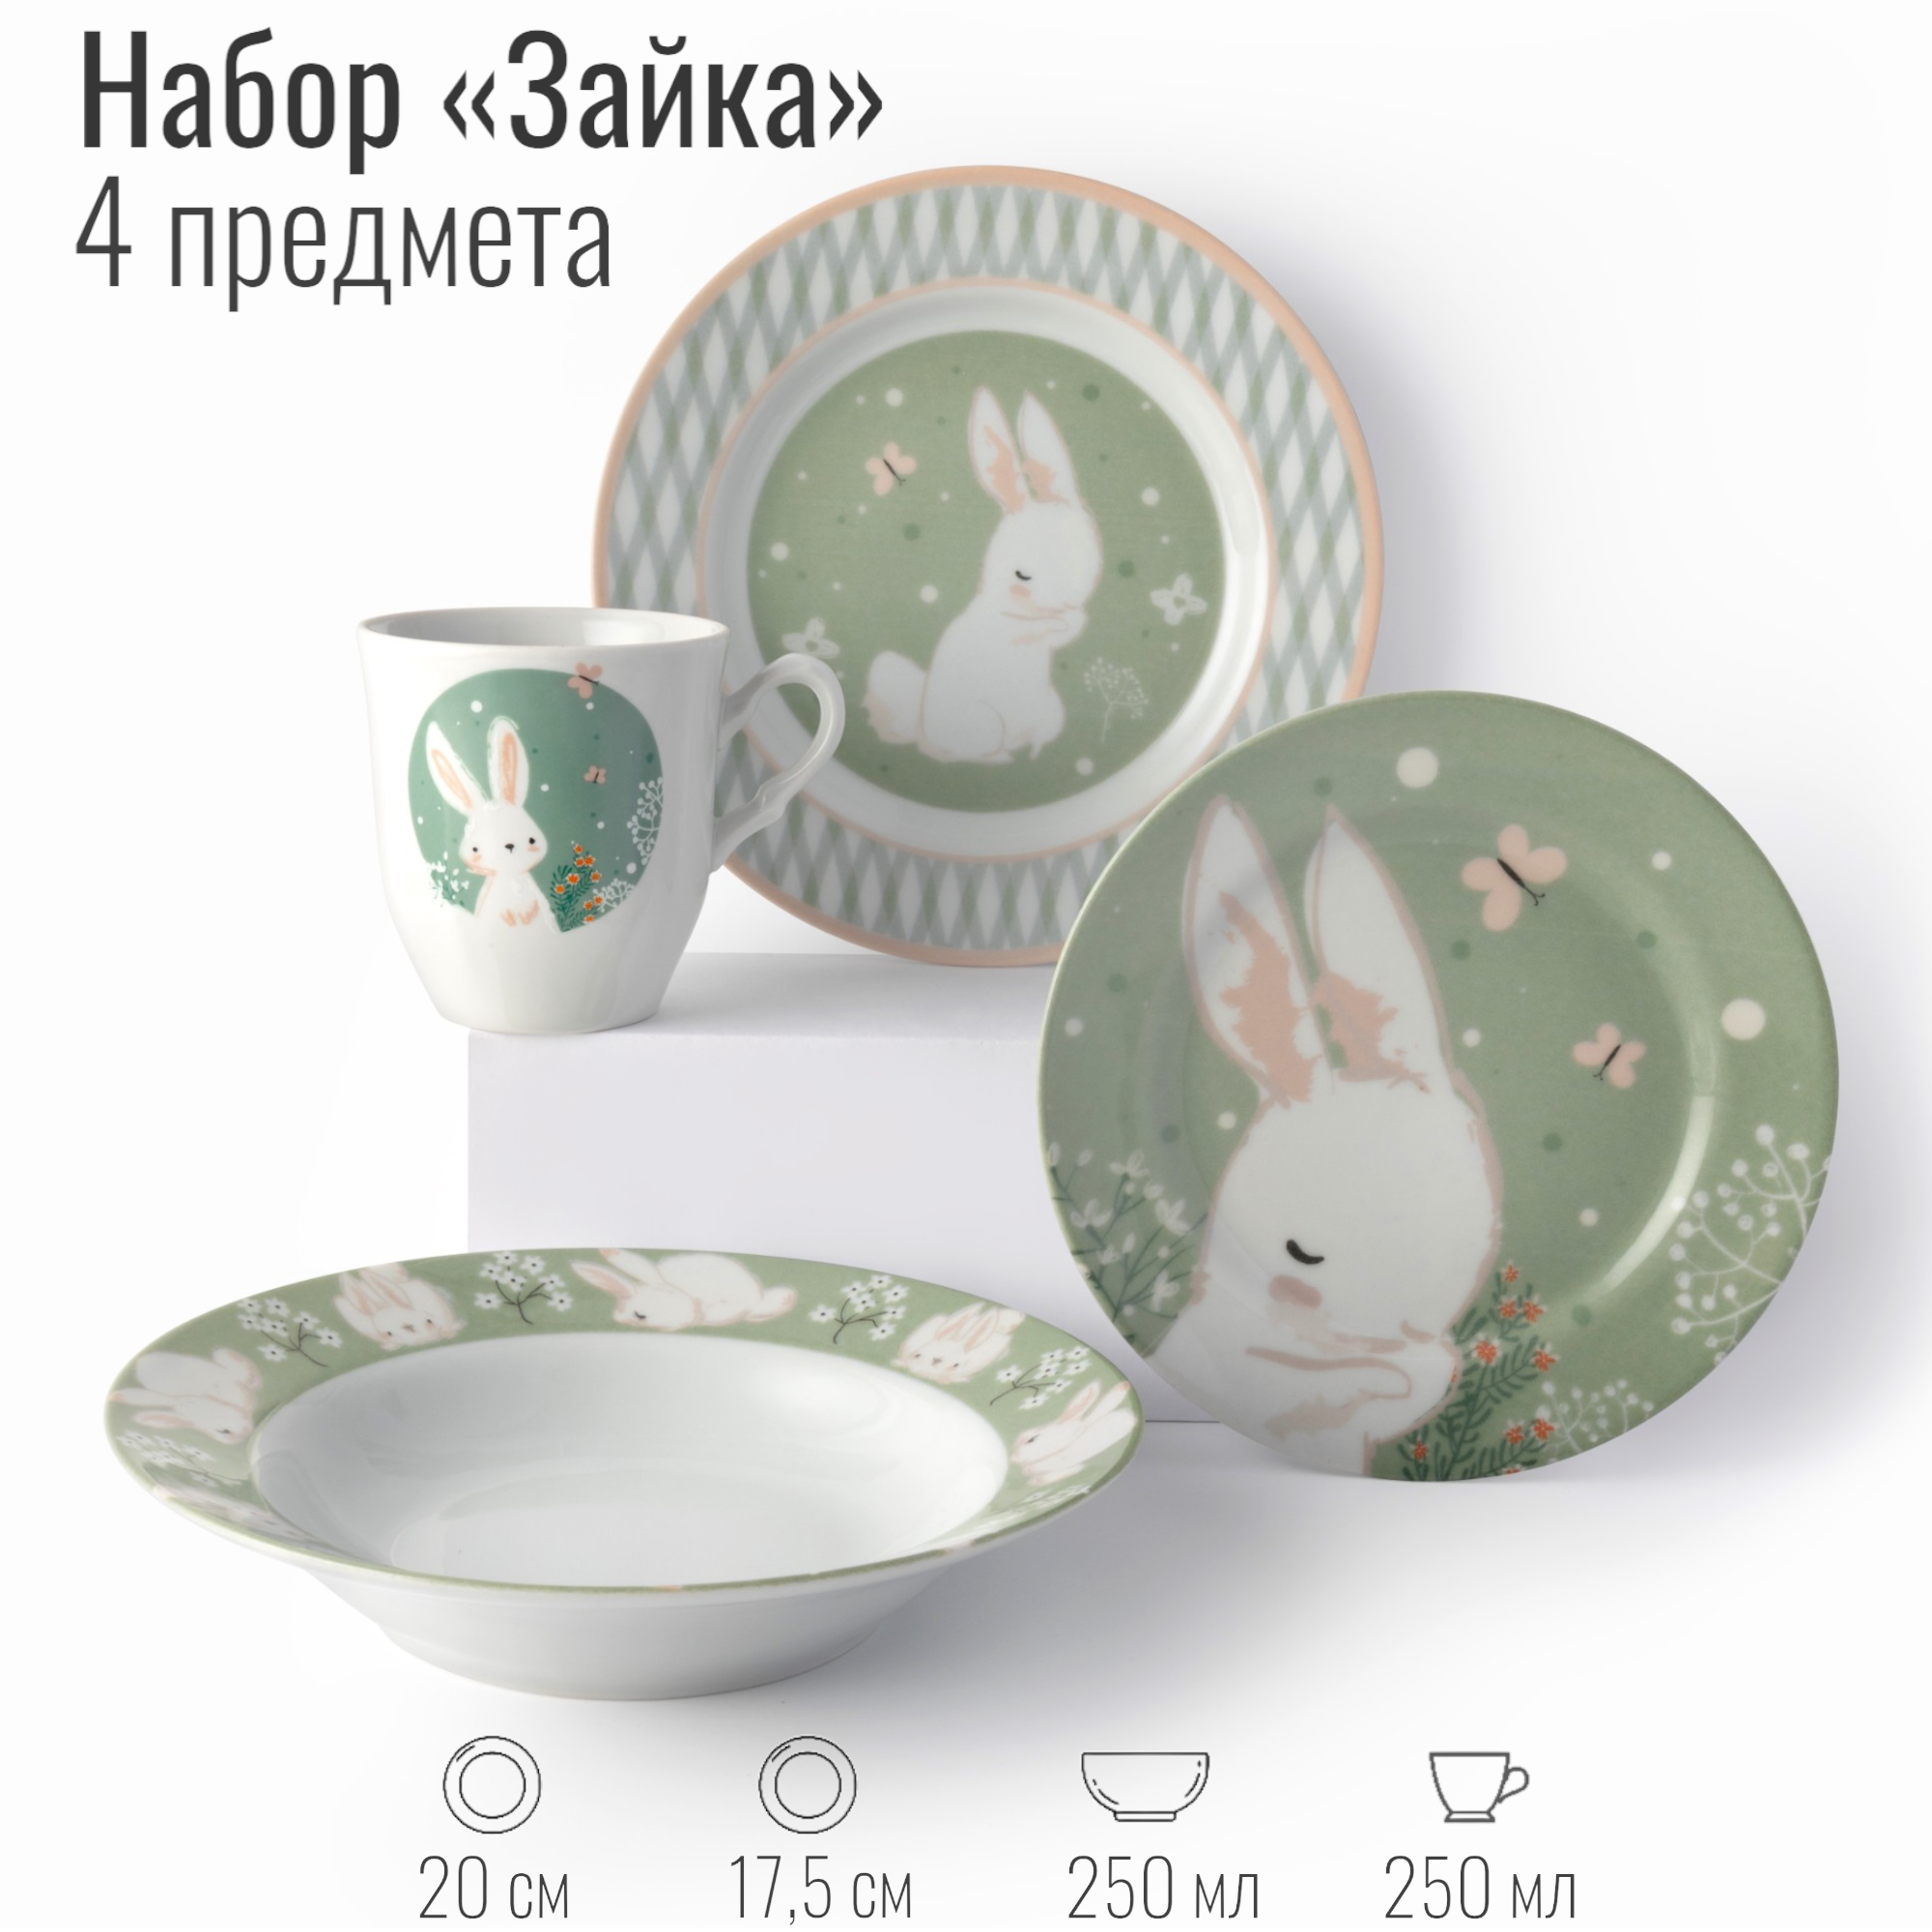 Набор детской посуды из фарфора Зайка 4 предмета: тарелки плоские тарелка глубокая кружка